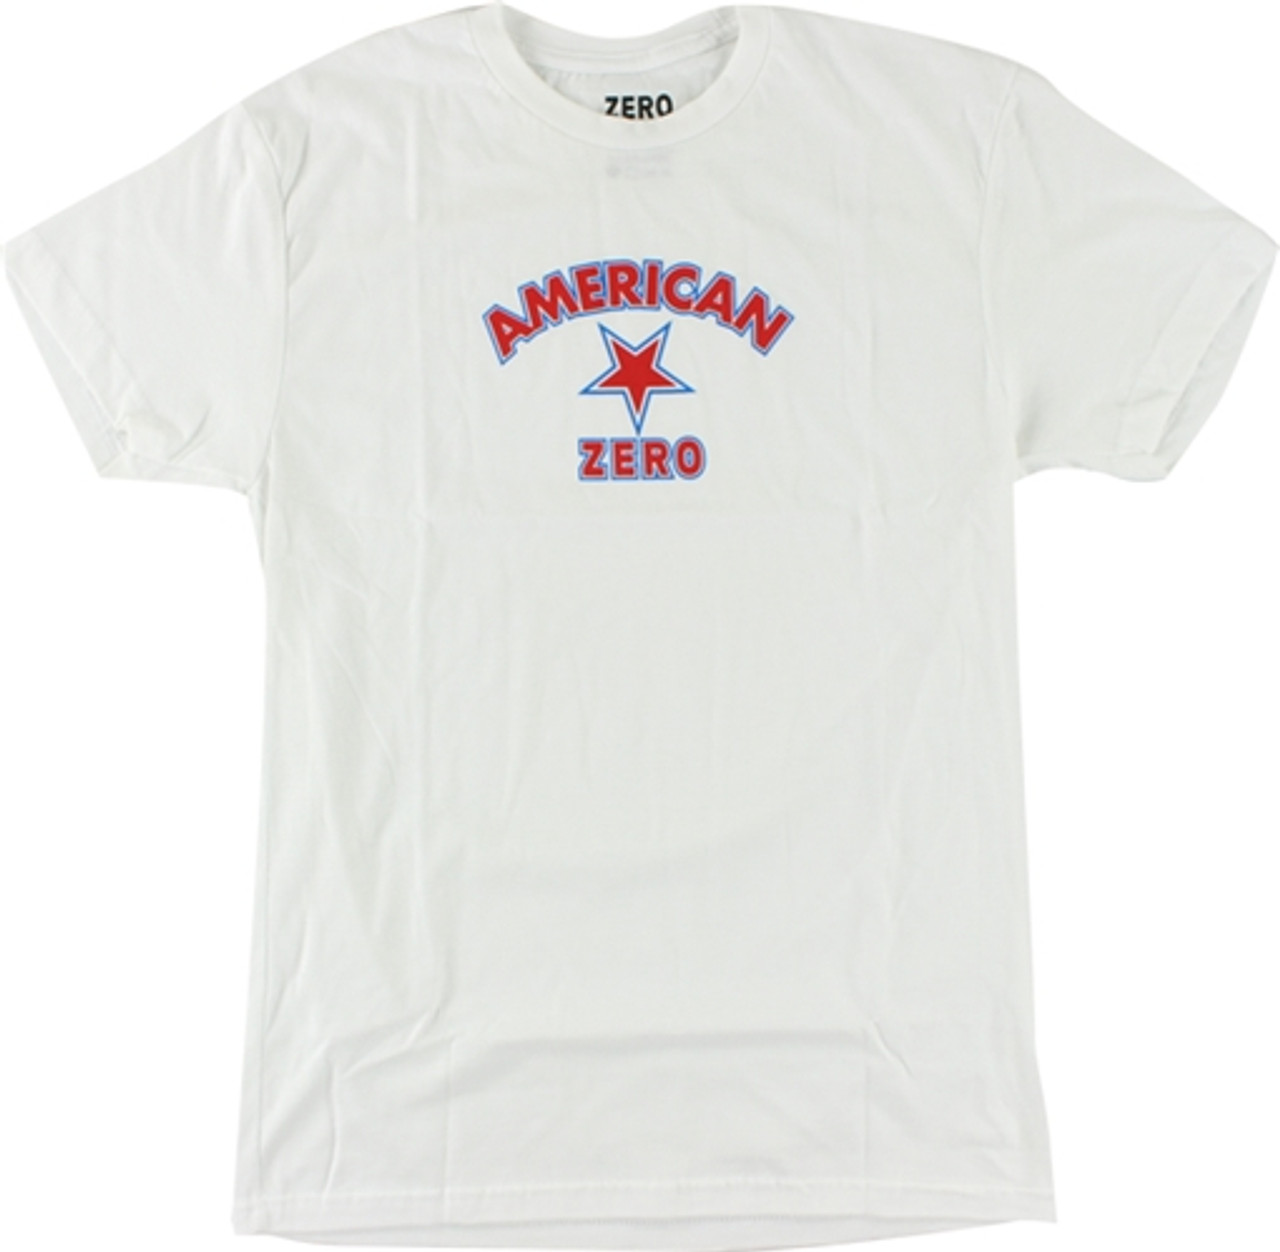 ZERO AMERICAN ZERO SS Tshirt MEDIUM WHITE